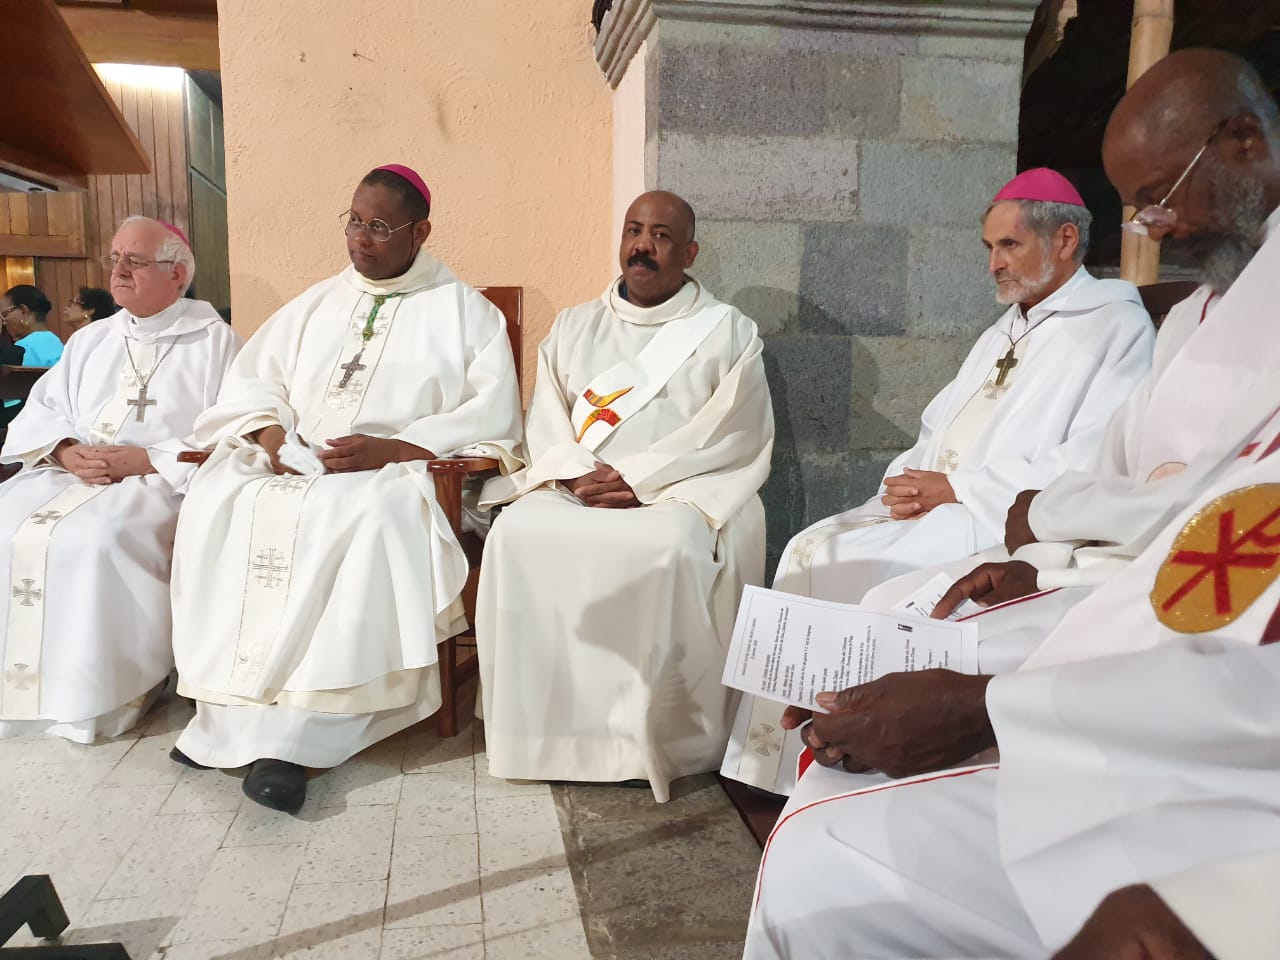     Le diocèse de Guadeloupe fait sa rentrée

